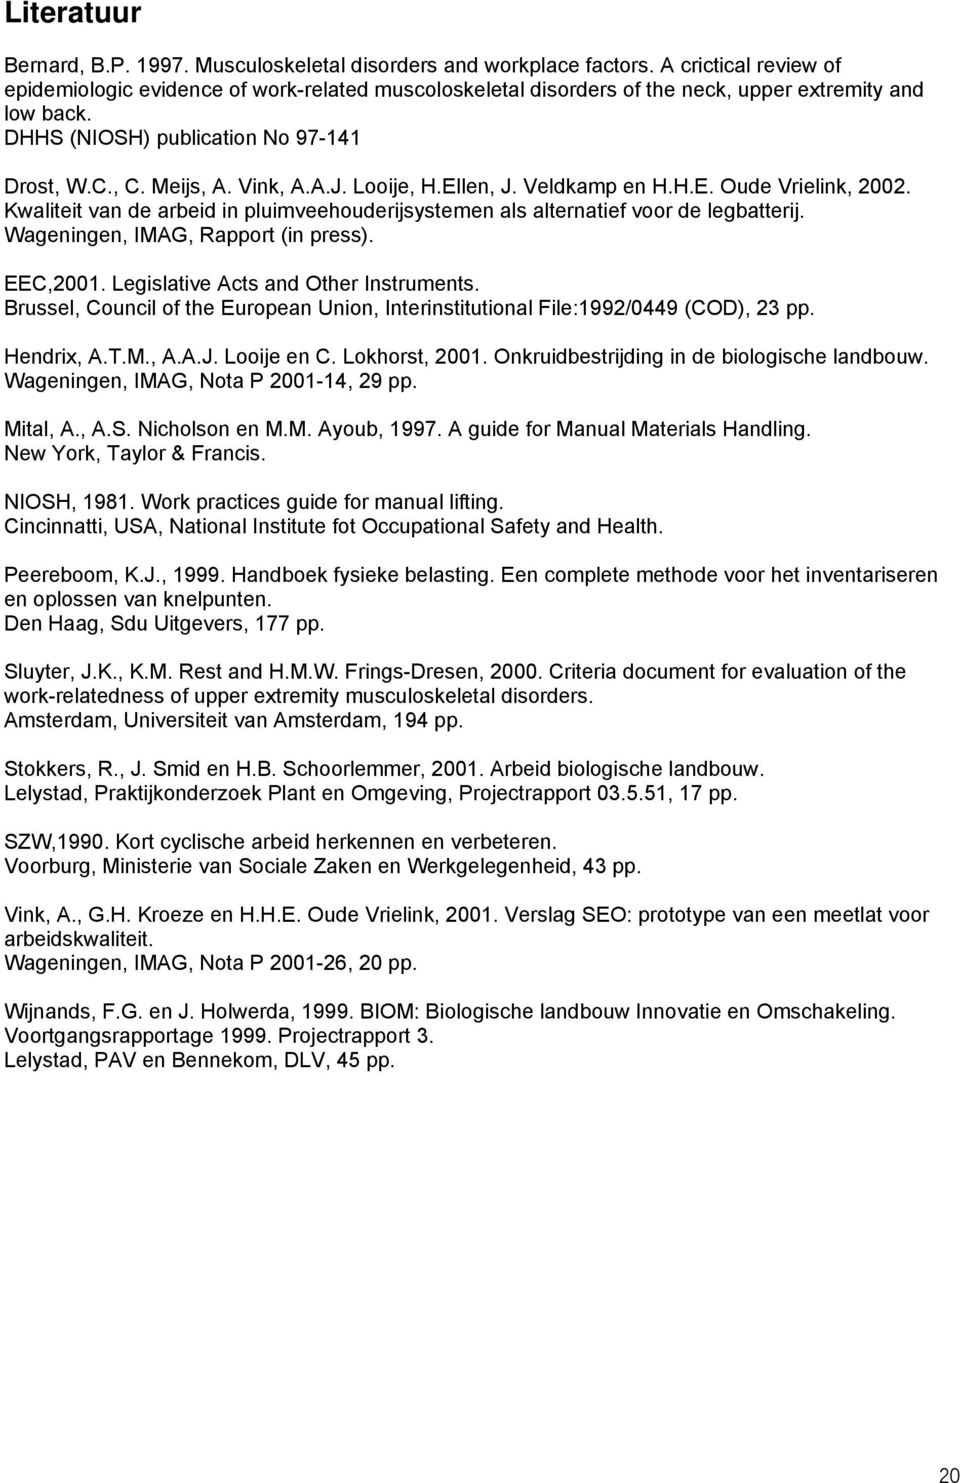 A.J. Looije, H.Ellen, J. Veldkamp en H.H.E. Oude Vrielink, 2002. Kwaliteit van de arbeid in pluimveehouderijsystemen als alternatief voor de legbatterij. Wageningen, IMAG, Rapport (in press).